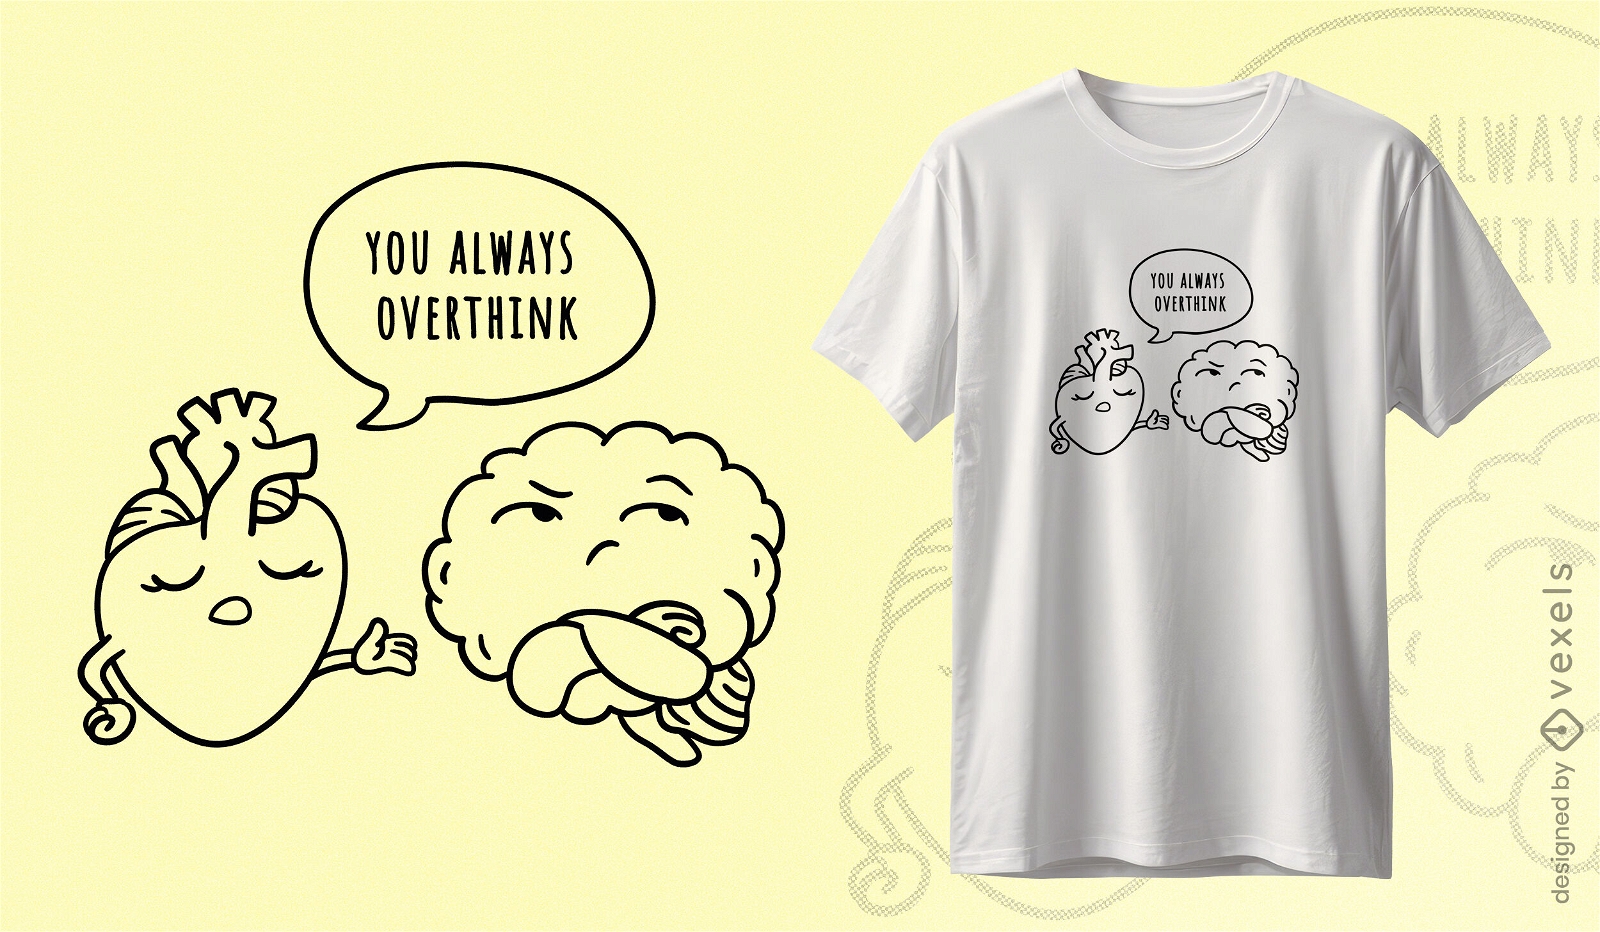 Overthinking heart t-shirt design